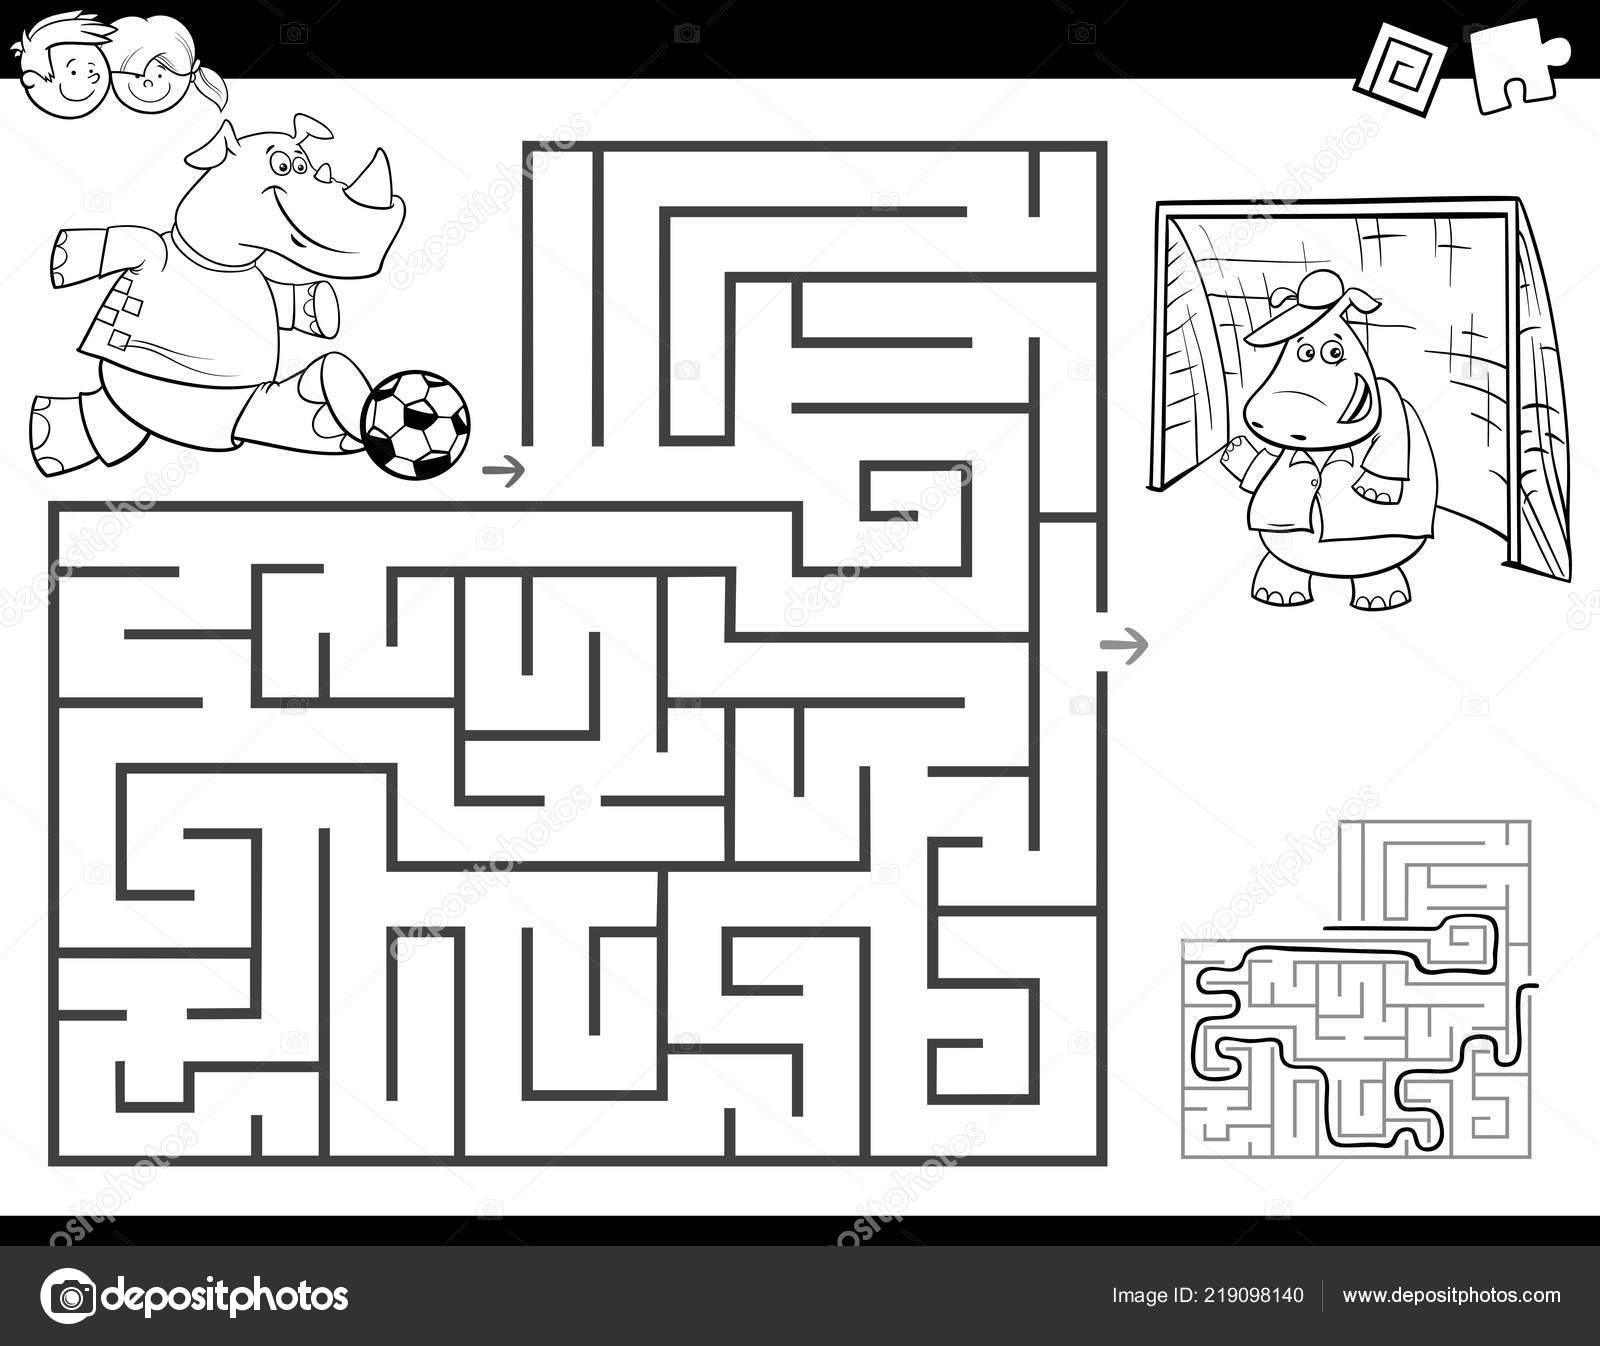 Jogo de labirinto de desenho animado educação para crianças ajuda